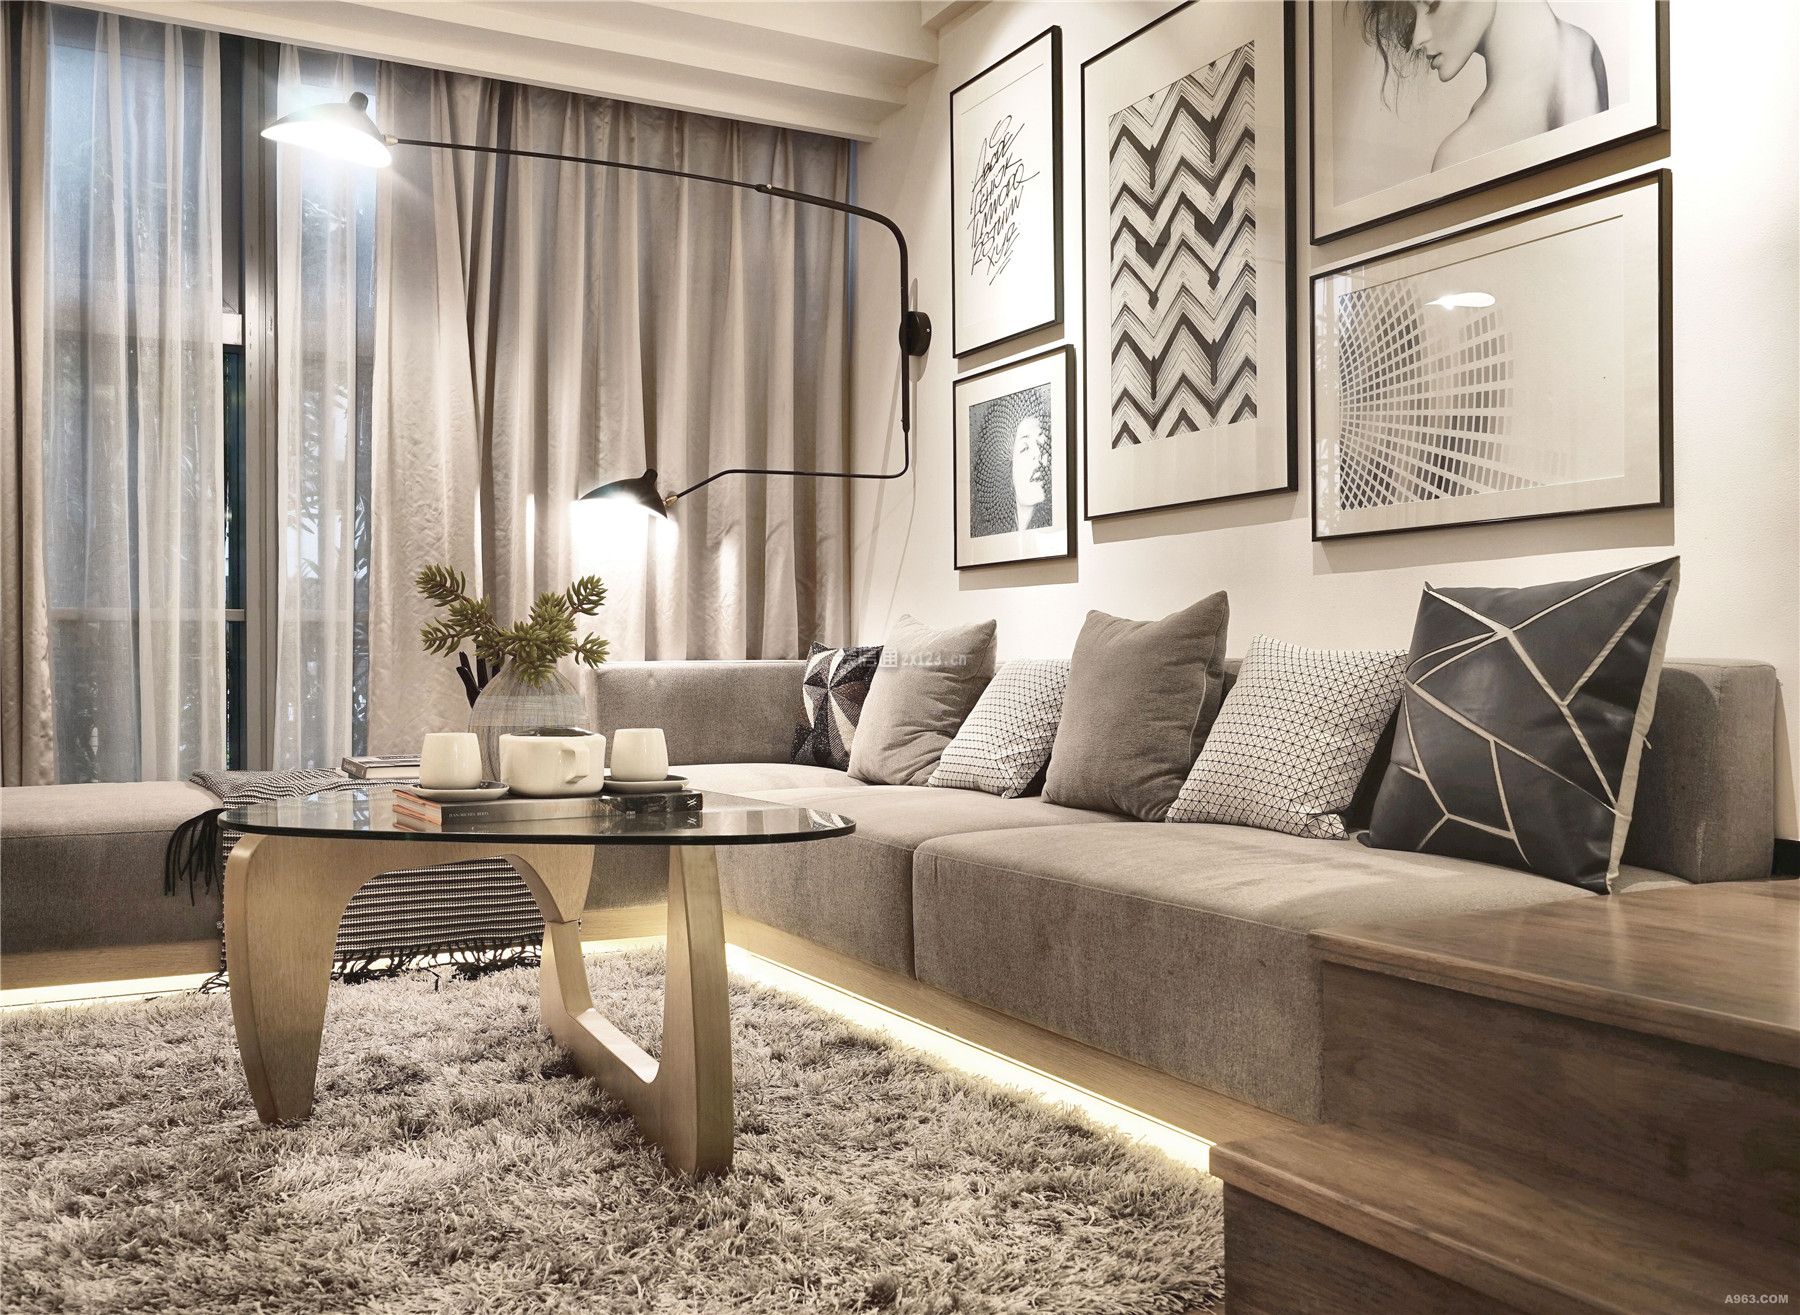 现代风格家庭客厅地毯装饰效果图赏析